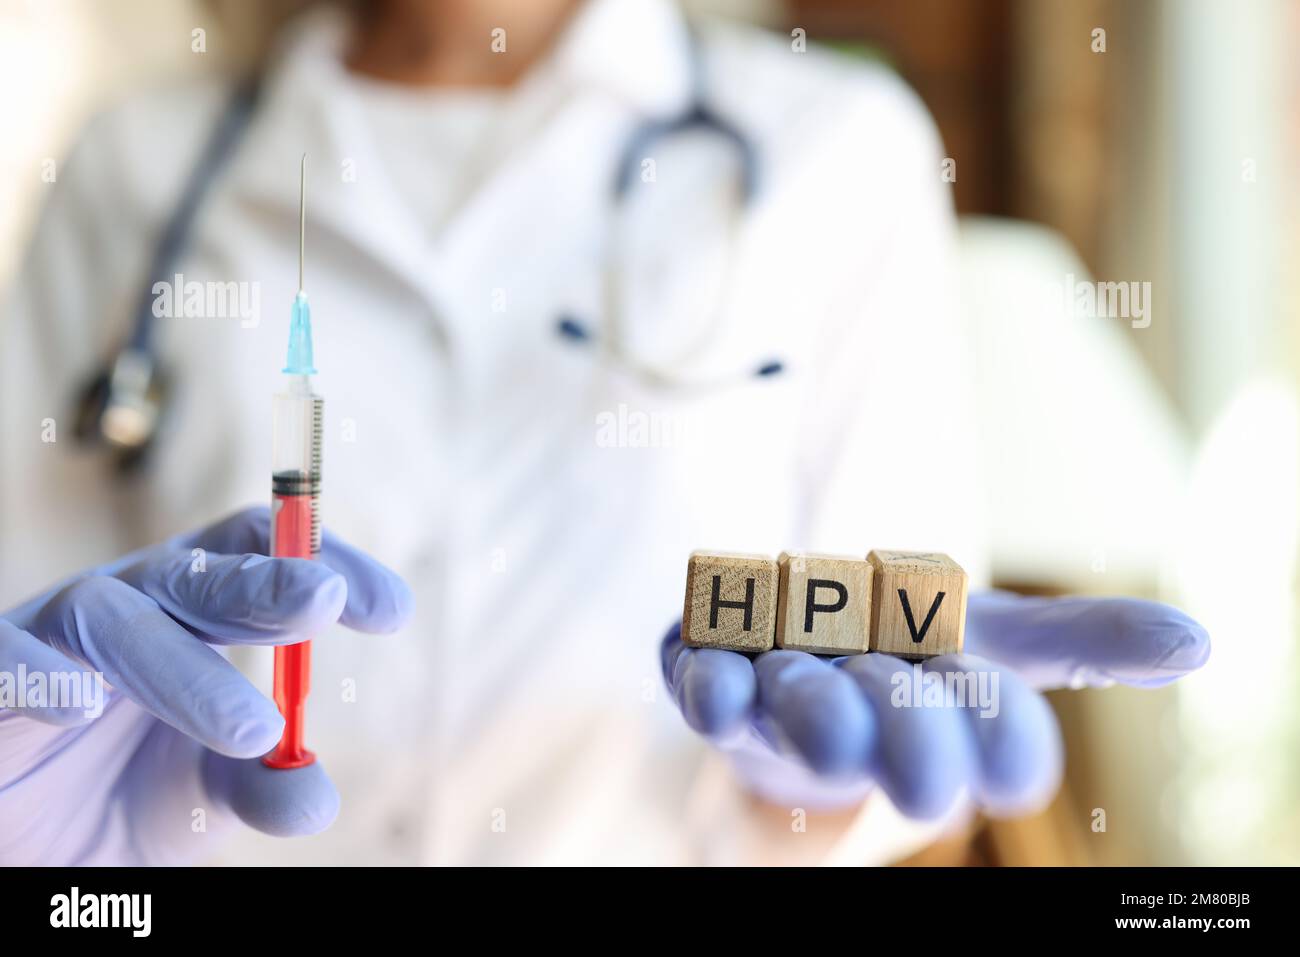 Infermiera o medico femminile con siringa e lettere HPV in mani con guanti. Foto Stock